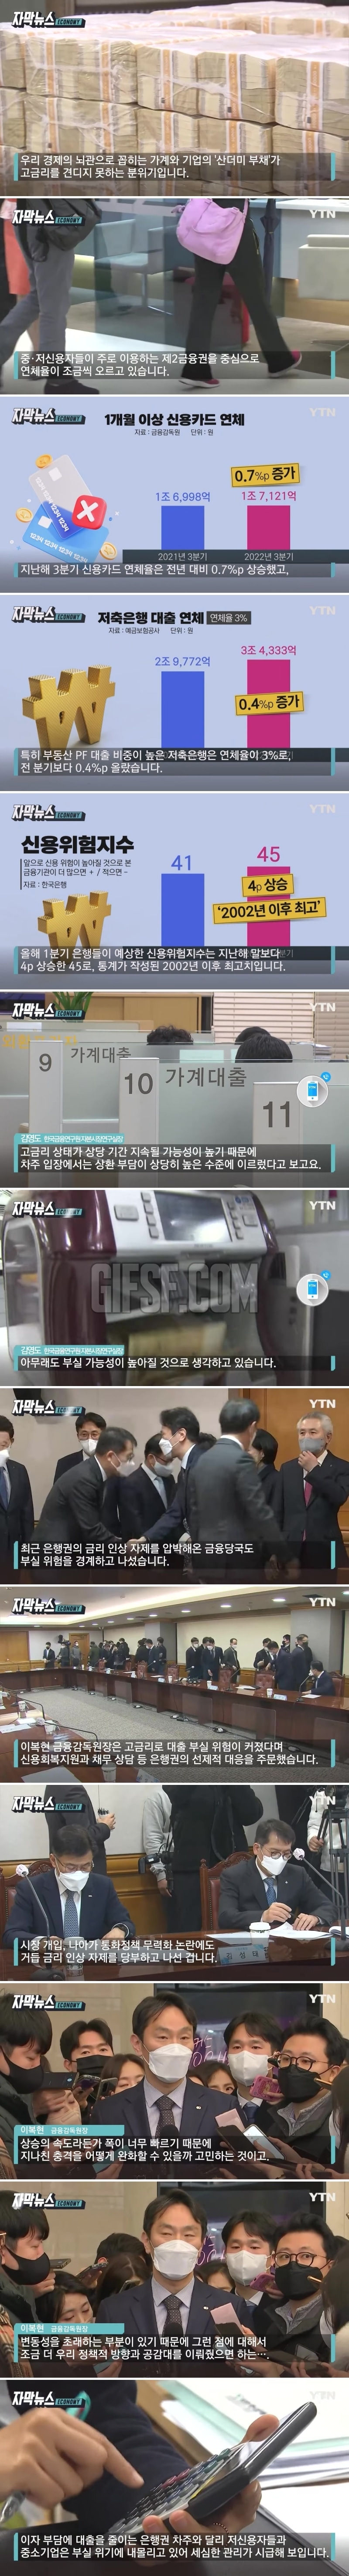 통계 이후 최고 위험.폭발 위기 놓인 韓 경제.jpg